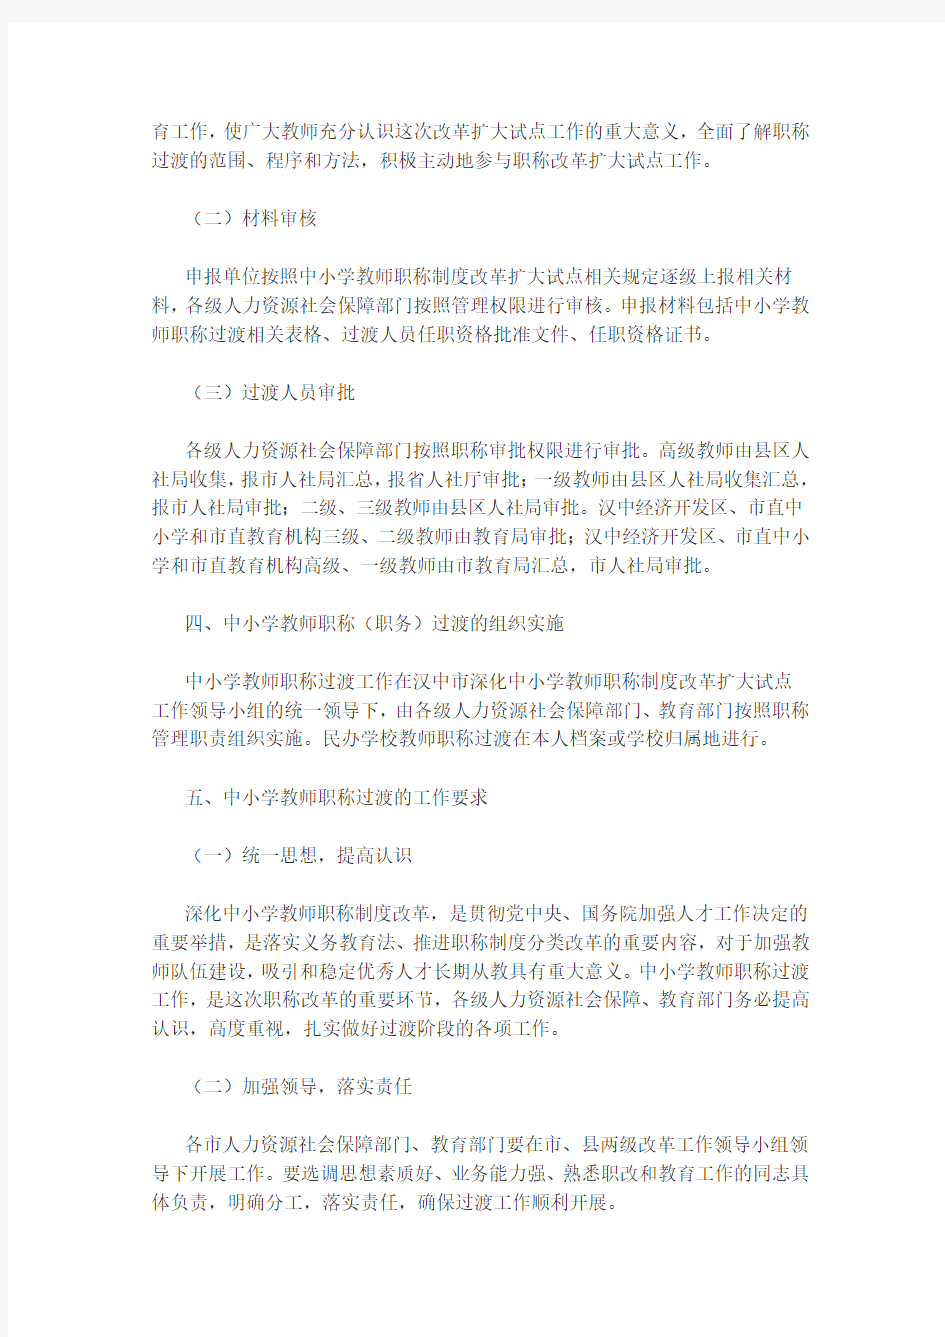 汉中市中小学教师职称过渡办法(试行)